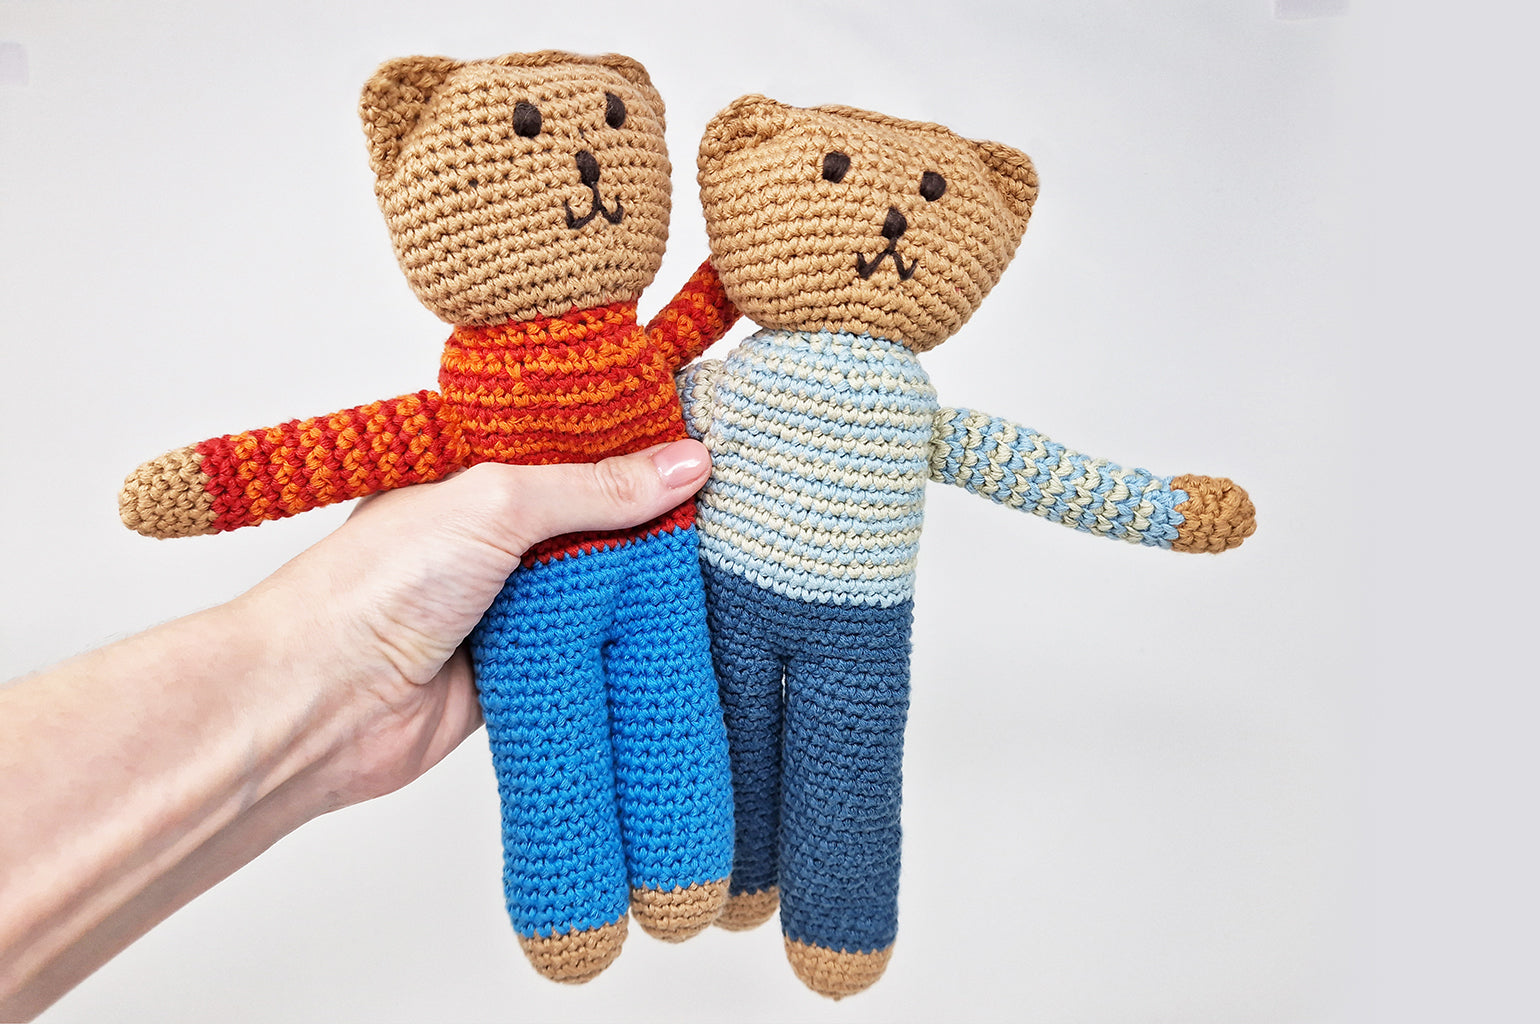 Children's handmade crochet toy bear